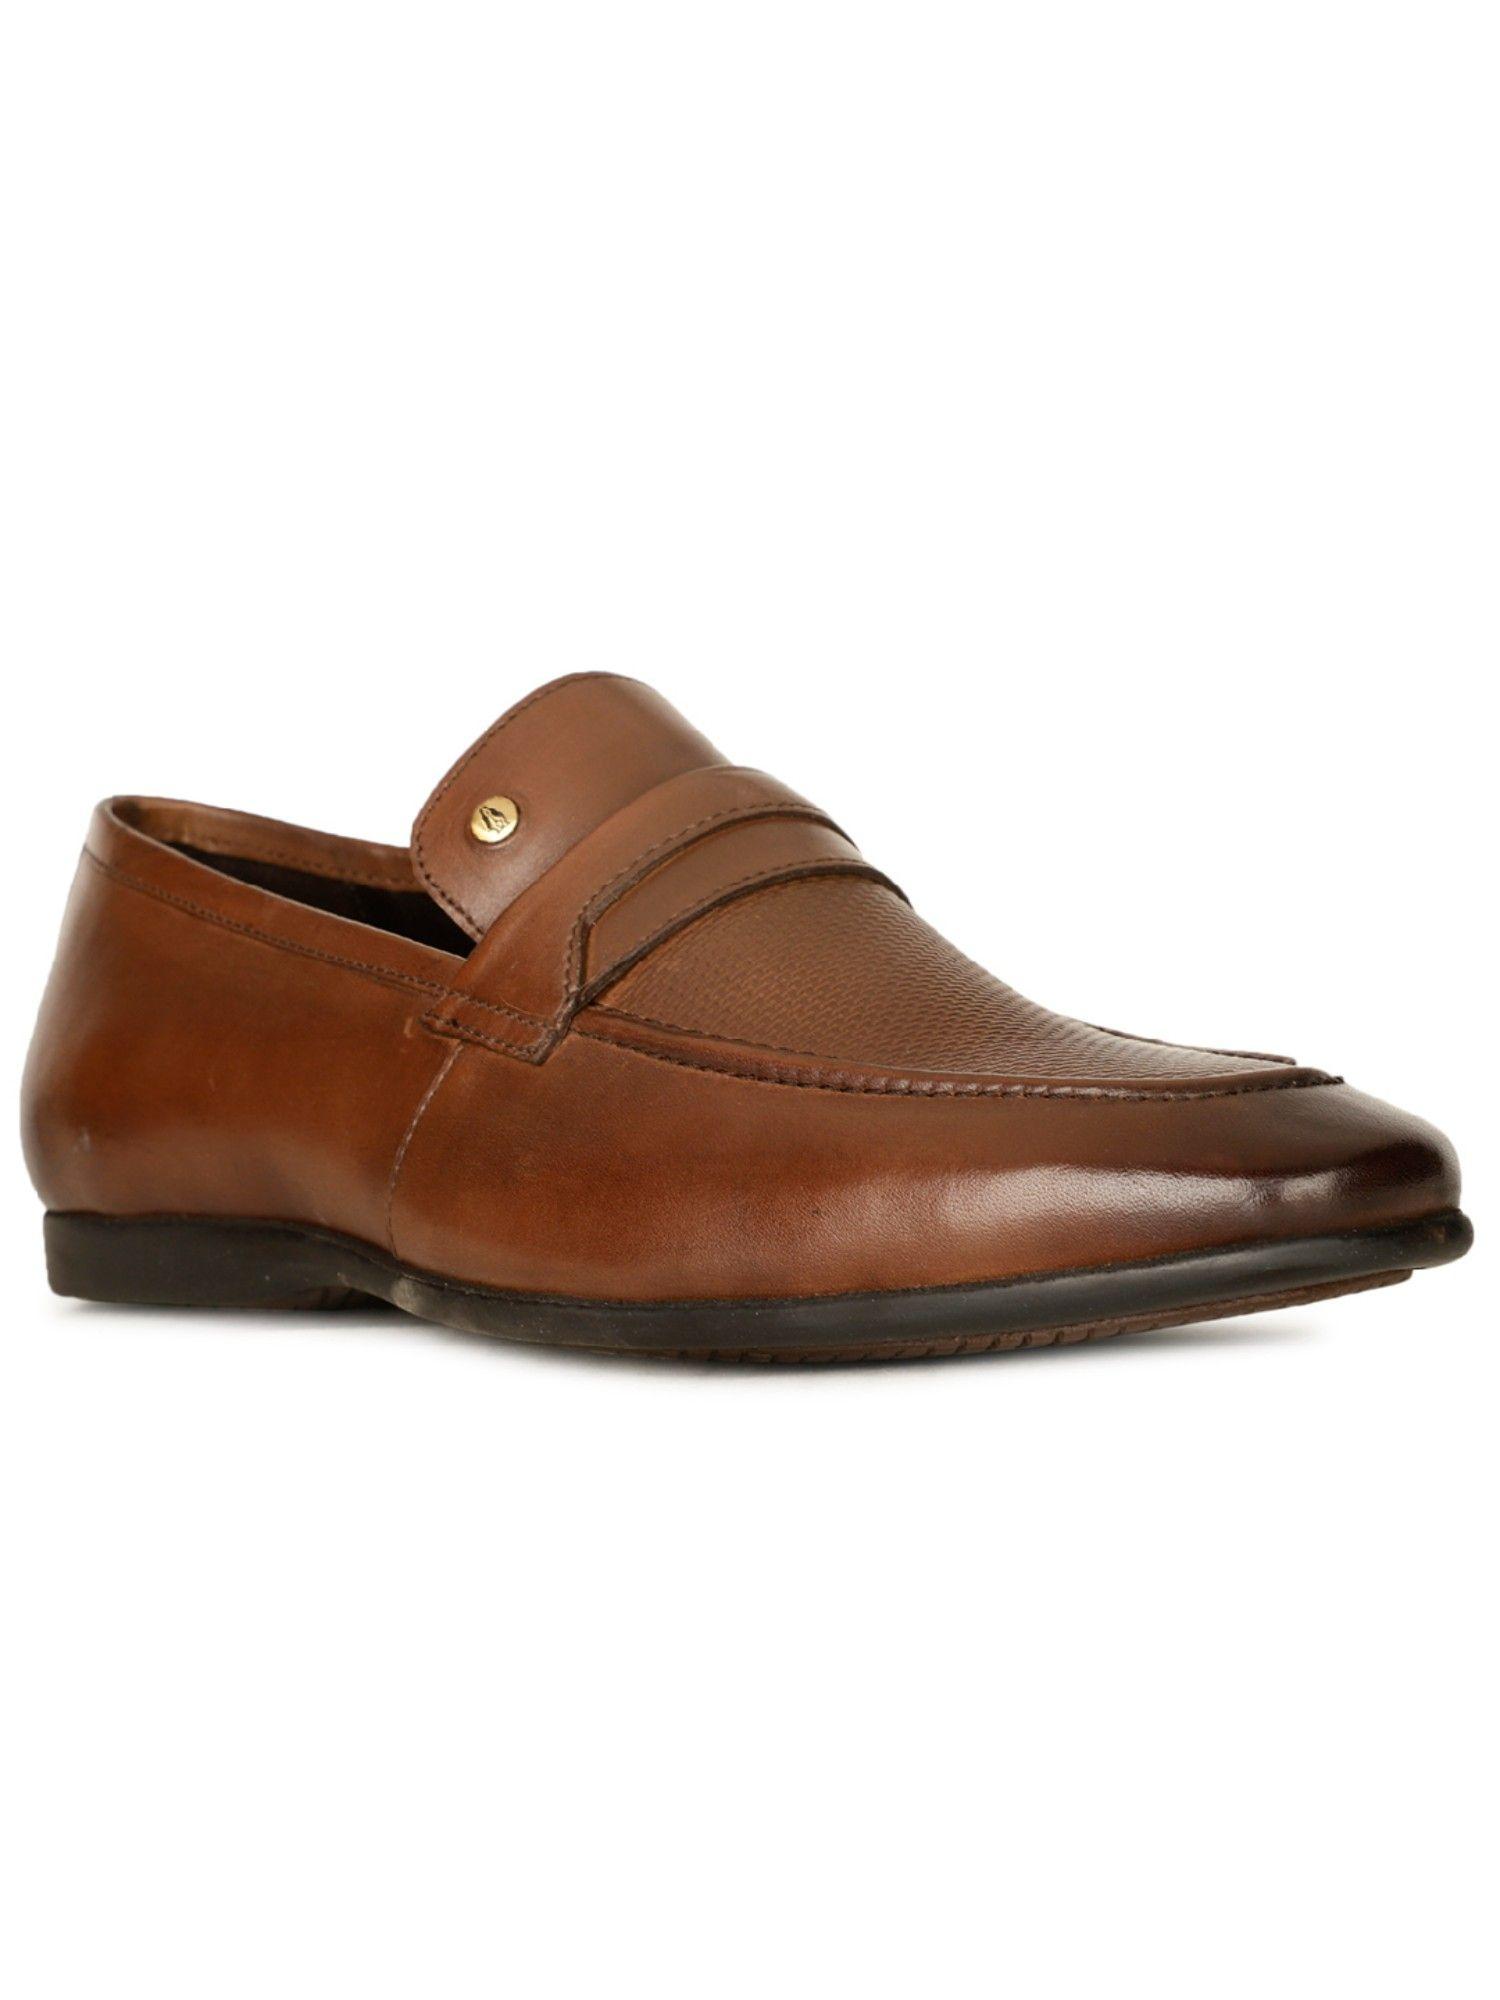 men slip-on formal shoes